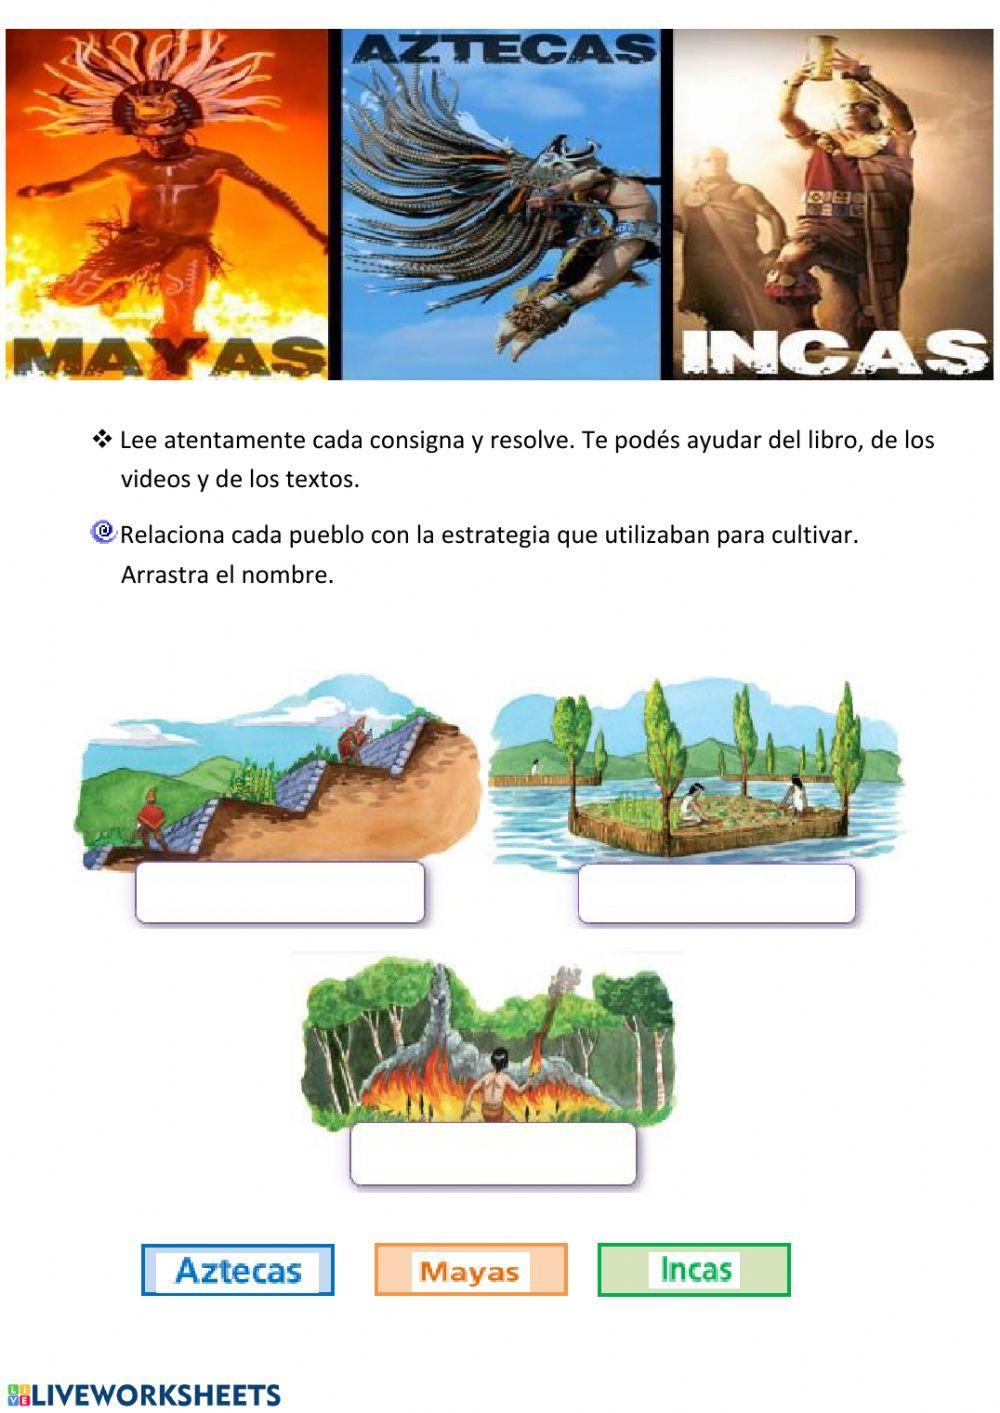 Civilizaciones mayas - incas y aztecas